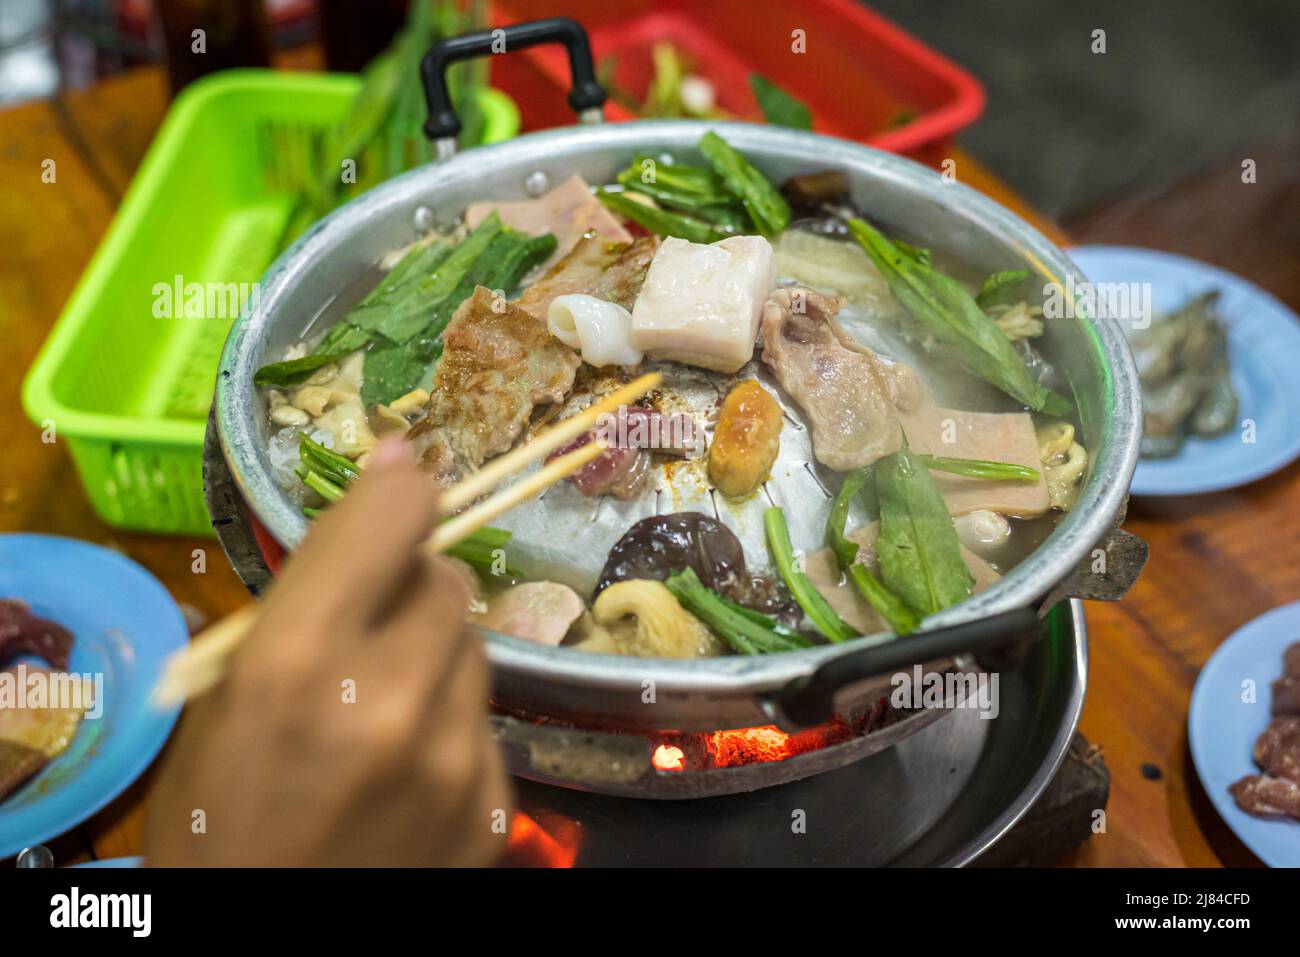 Assortiment de viandes, champignons et culantro (eryngium) cuits dans un pot de feu thaïlandais (MAW fai) dans un restaurant en libre-service à Bangkok, en Thaïlande. Banque D'Images